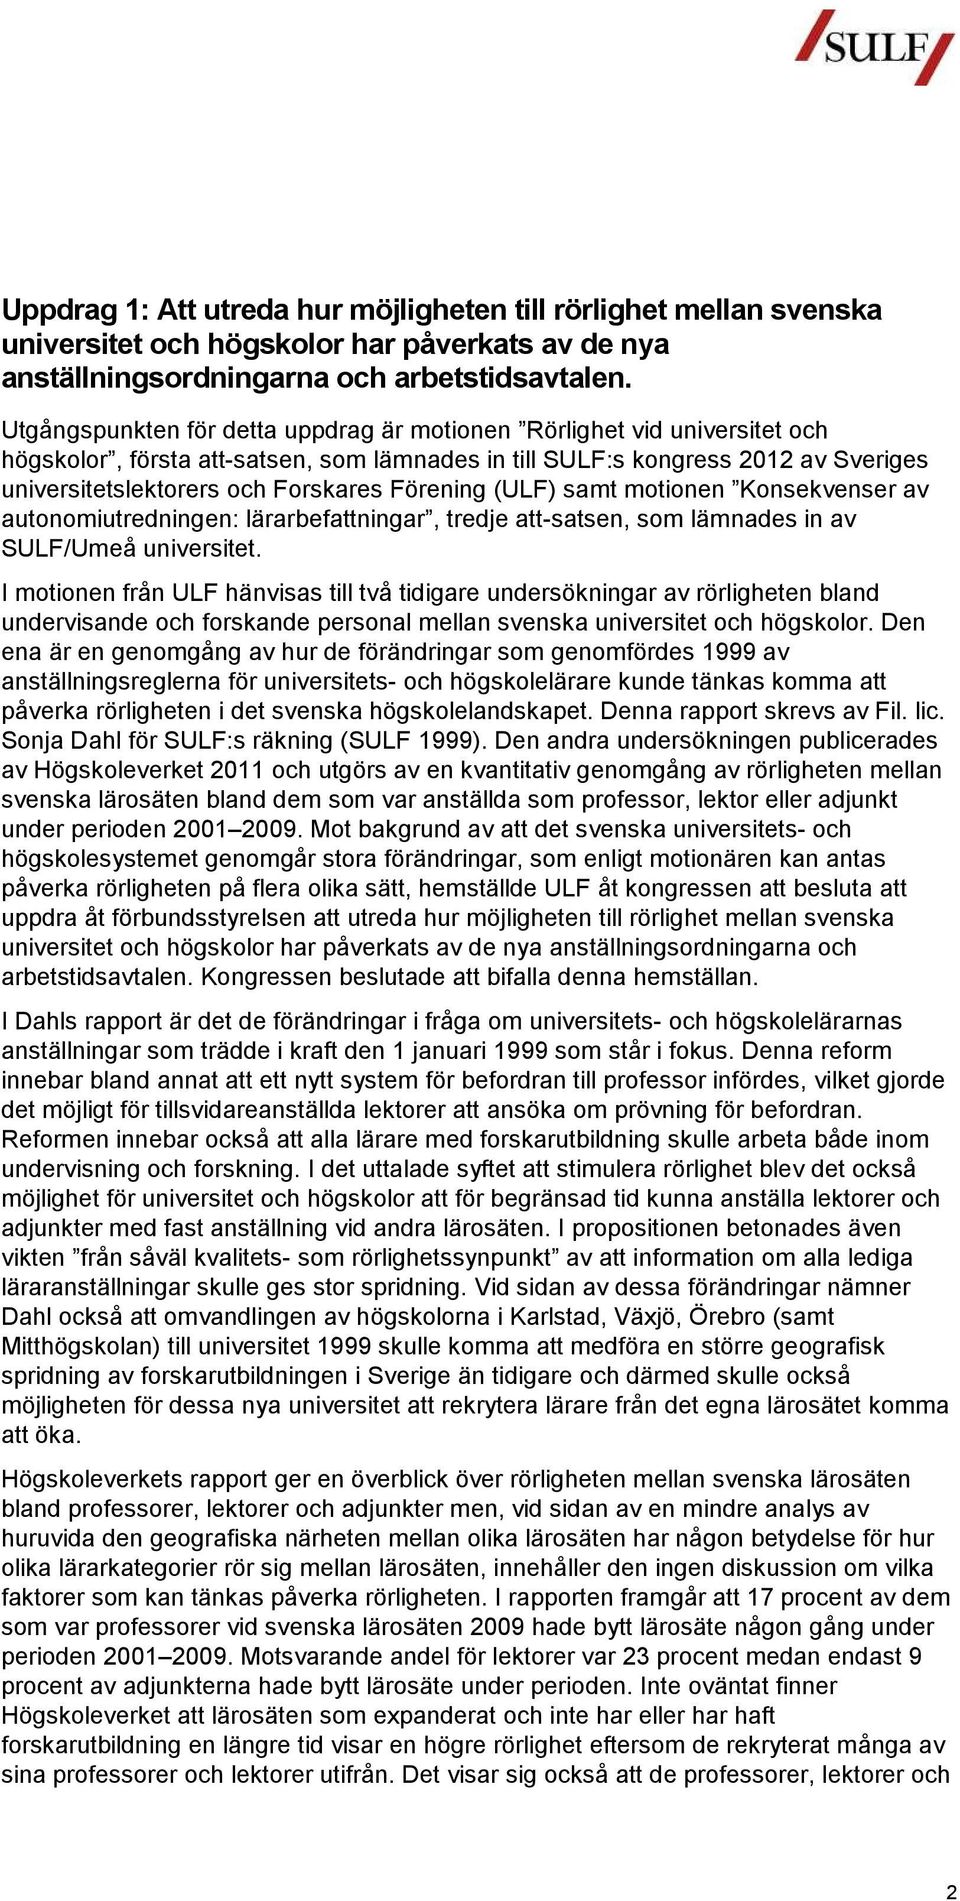 motionen Konsekvenser av autonomiutredningen: lärarbefattningar, tredje att-satsen, som lämnades in av SULF/Umeå.